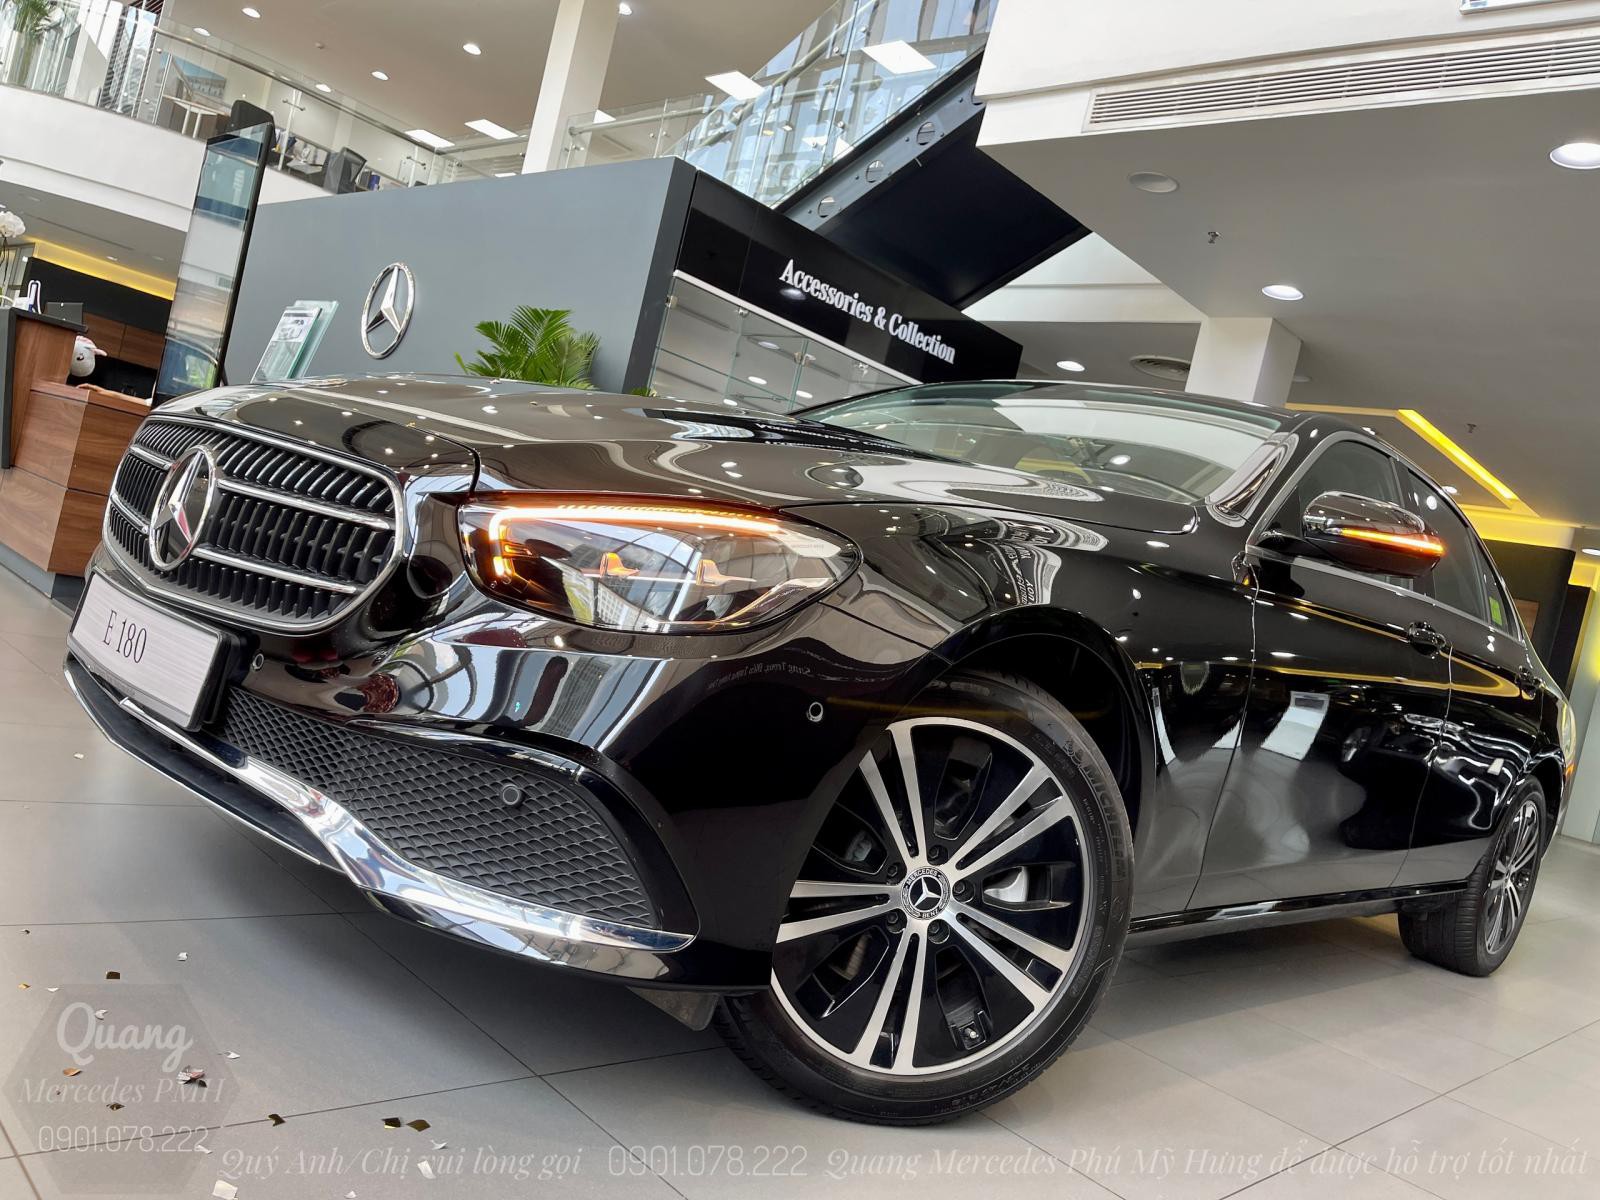 Mercedes E180 2022 Màu Đen - Cọc Sớm Giao Ngay Quận Tân Bình - Trả góp tới 80% | Lãi suất 7.5%/năm - 0901 078 222